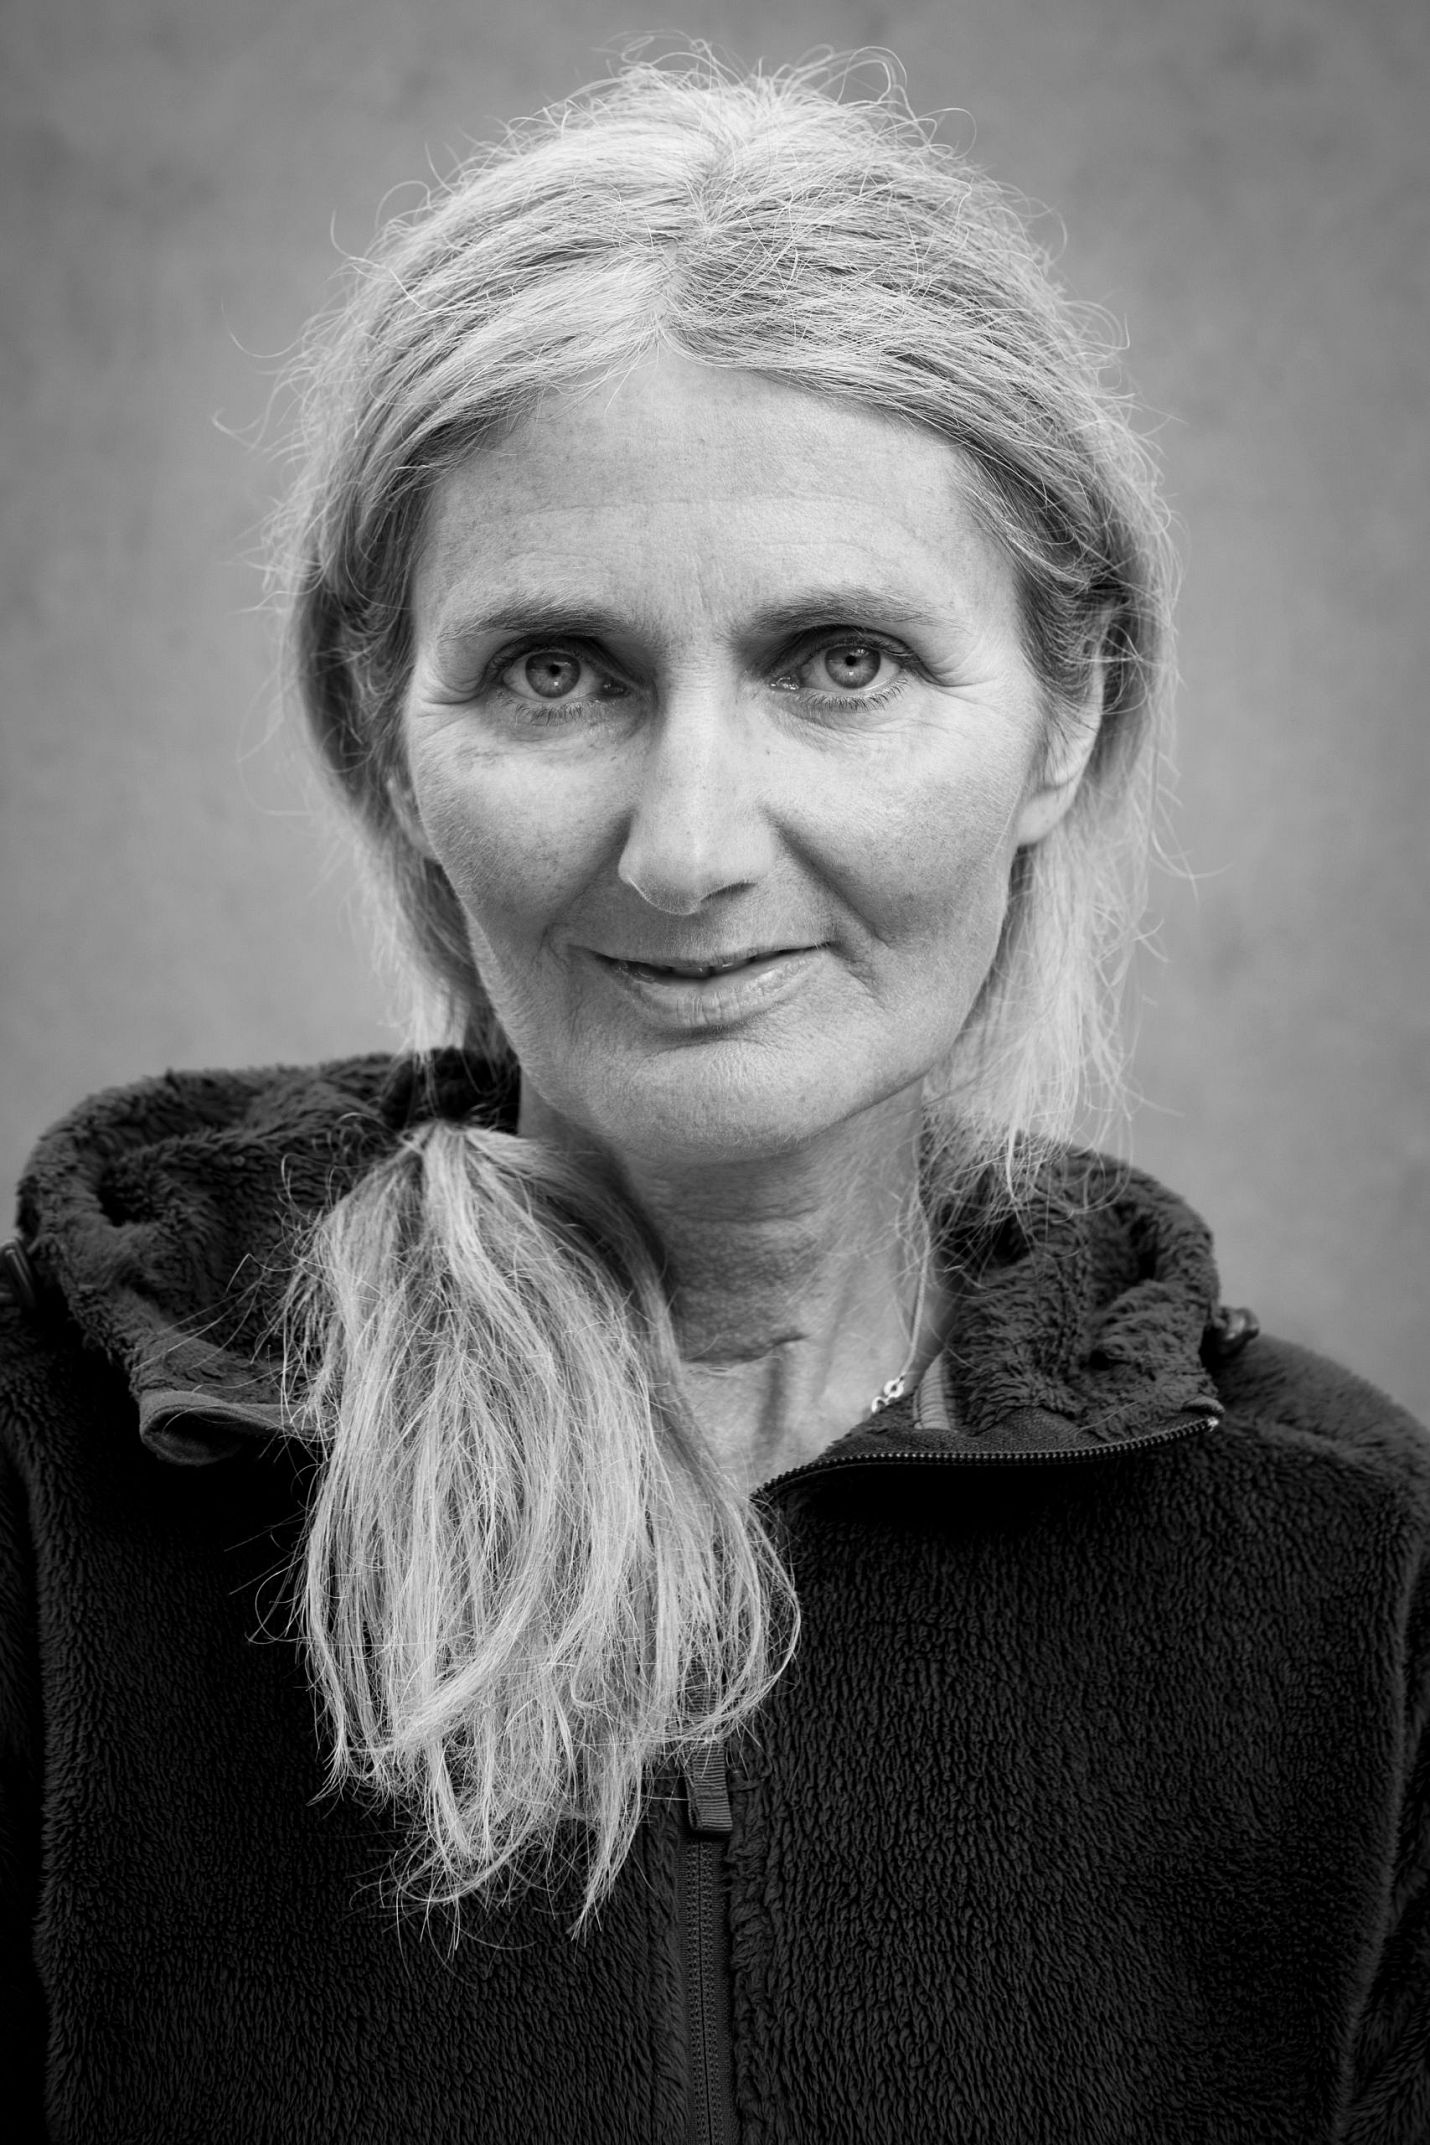 Hüttenwirtin Christine Ackermann von der Scharnitzer Alm im Karwendelgebirge - Portrait in schwarz-weiss